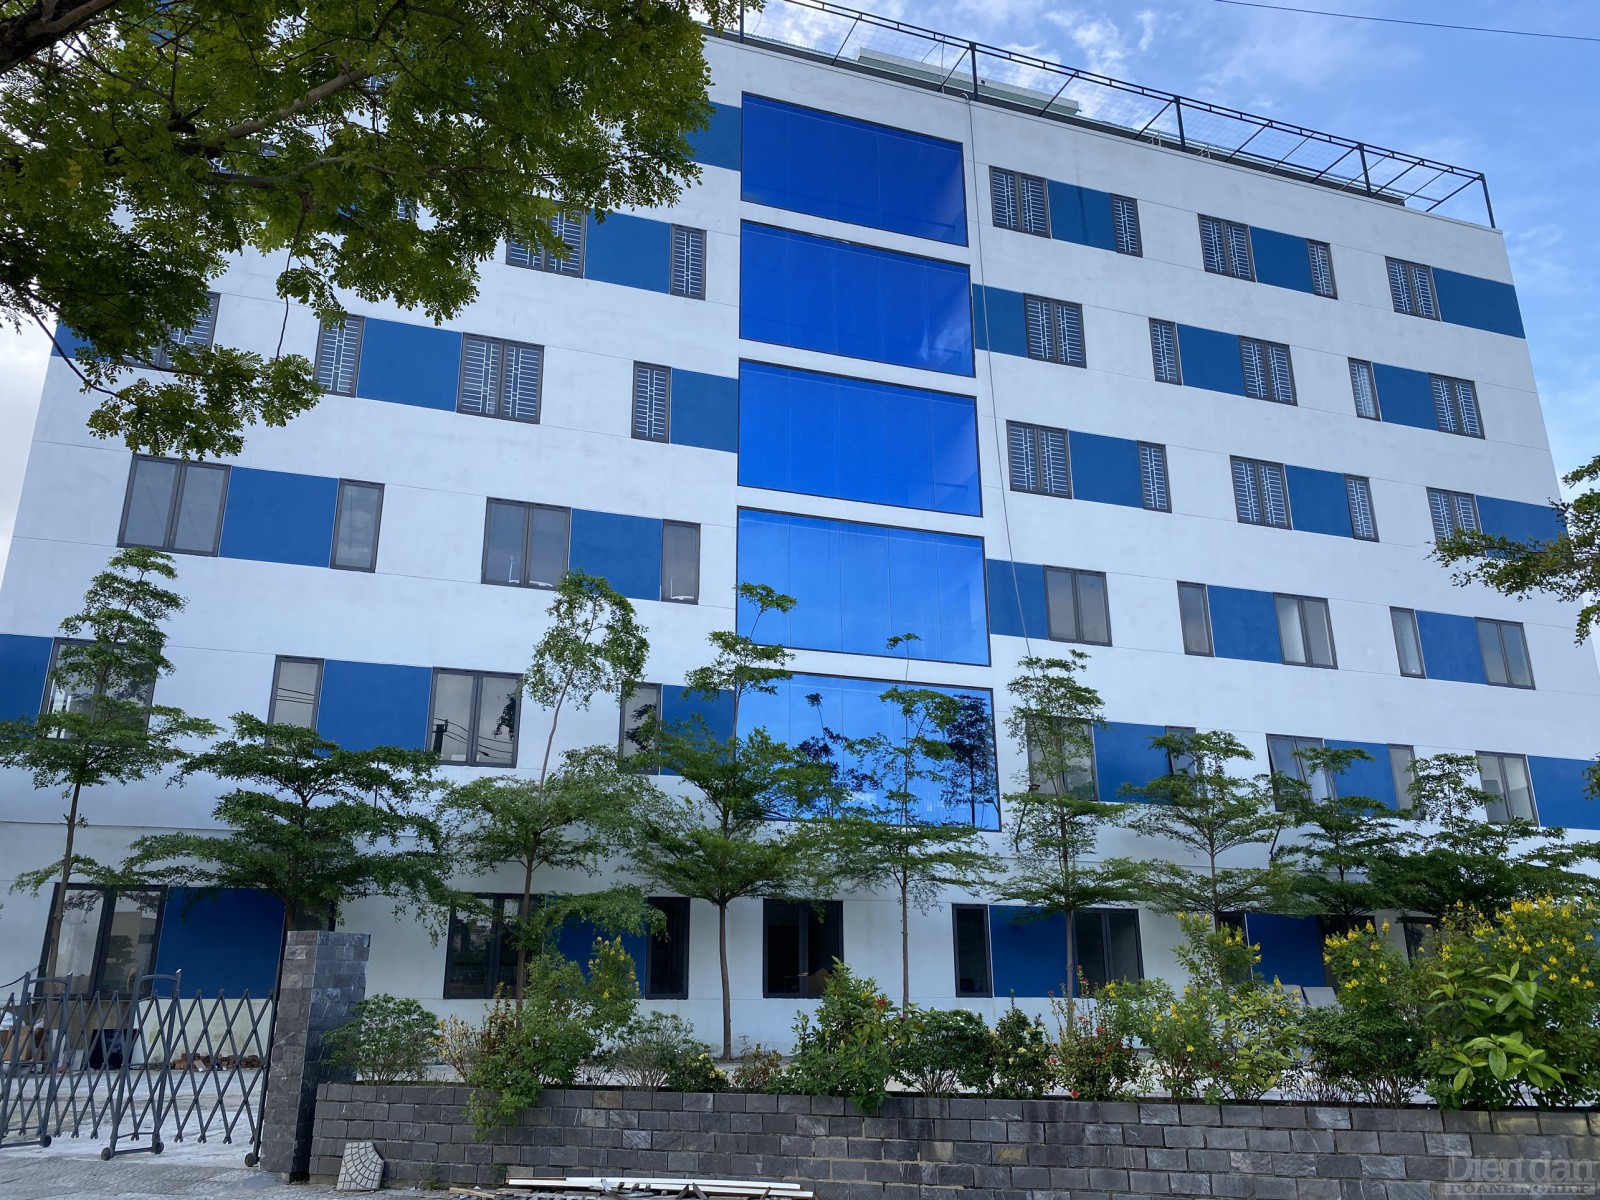 Dự án bệnh viện Hòa Hảo tại số 02 Nguyễn Hữu Thọ là đất quốc phòng vẫn đang thuộc thẩm quyền quản lý của Quân khu 5.